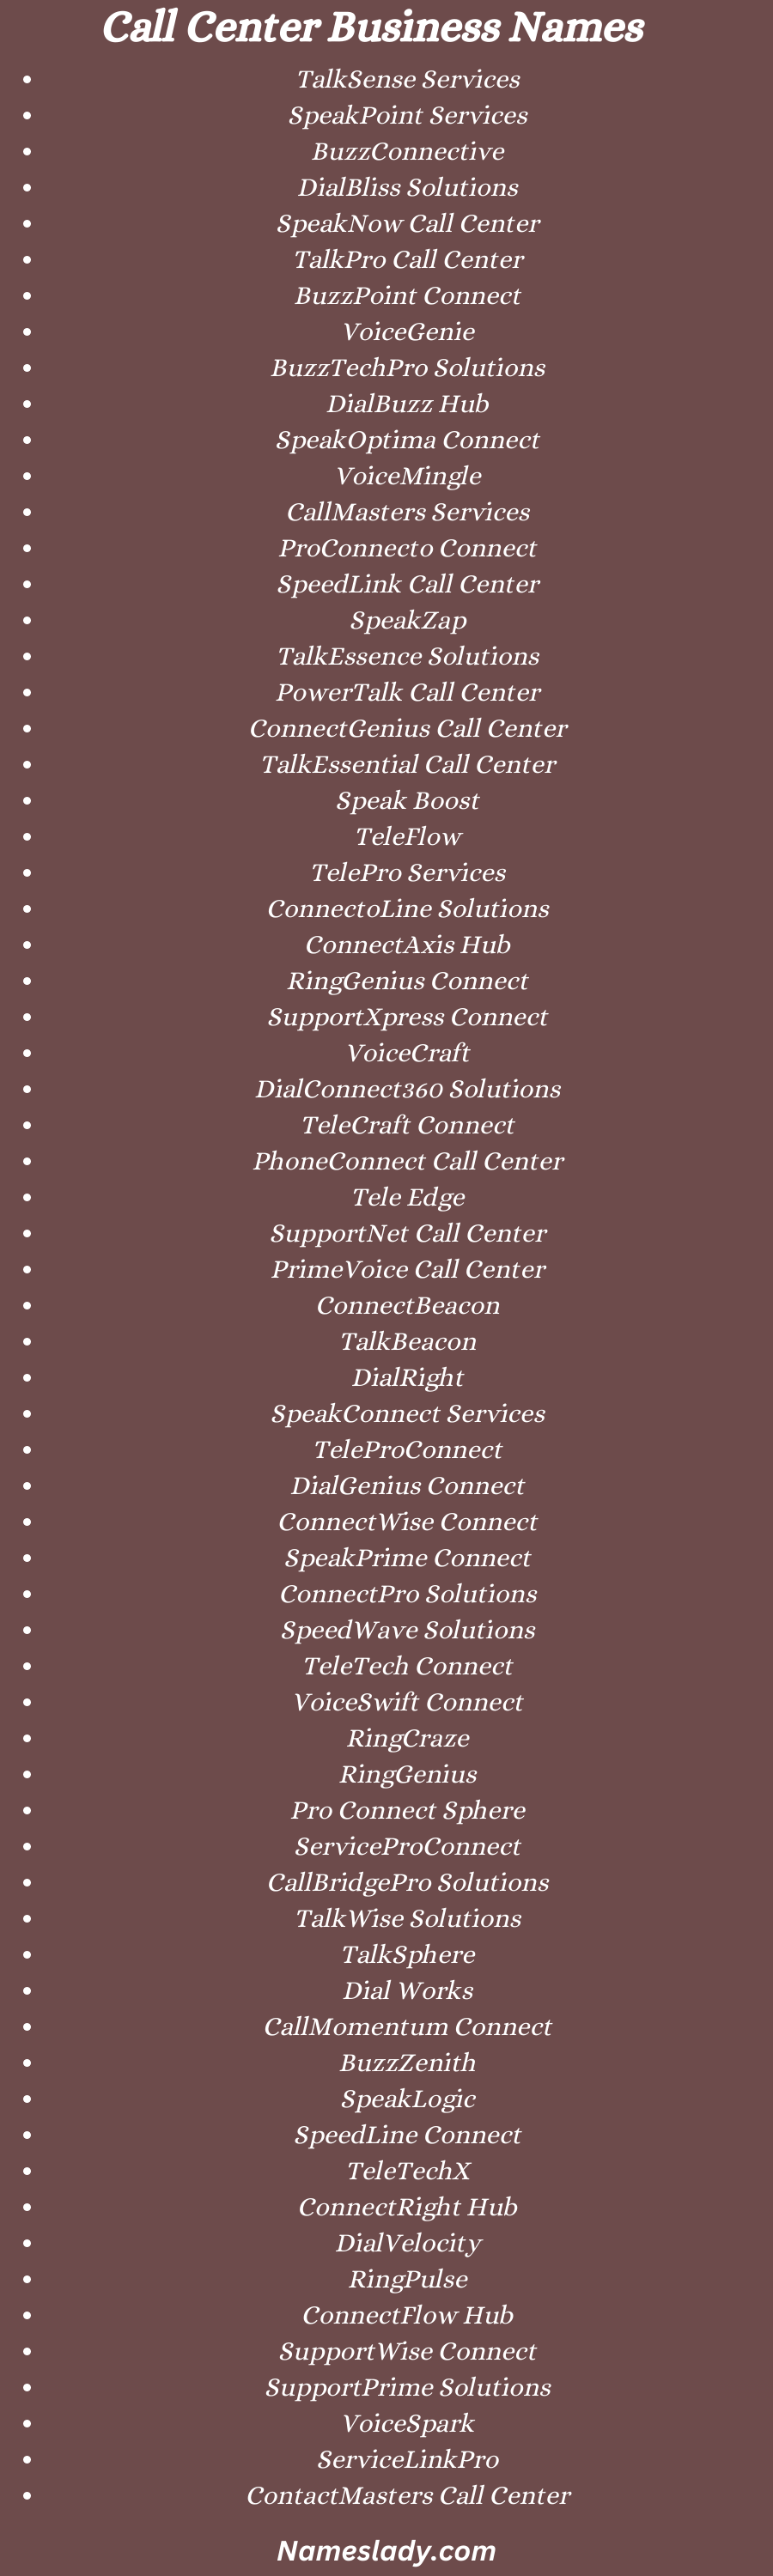 Call Center Business Names